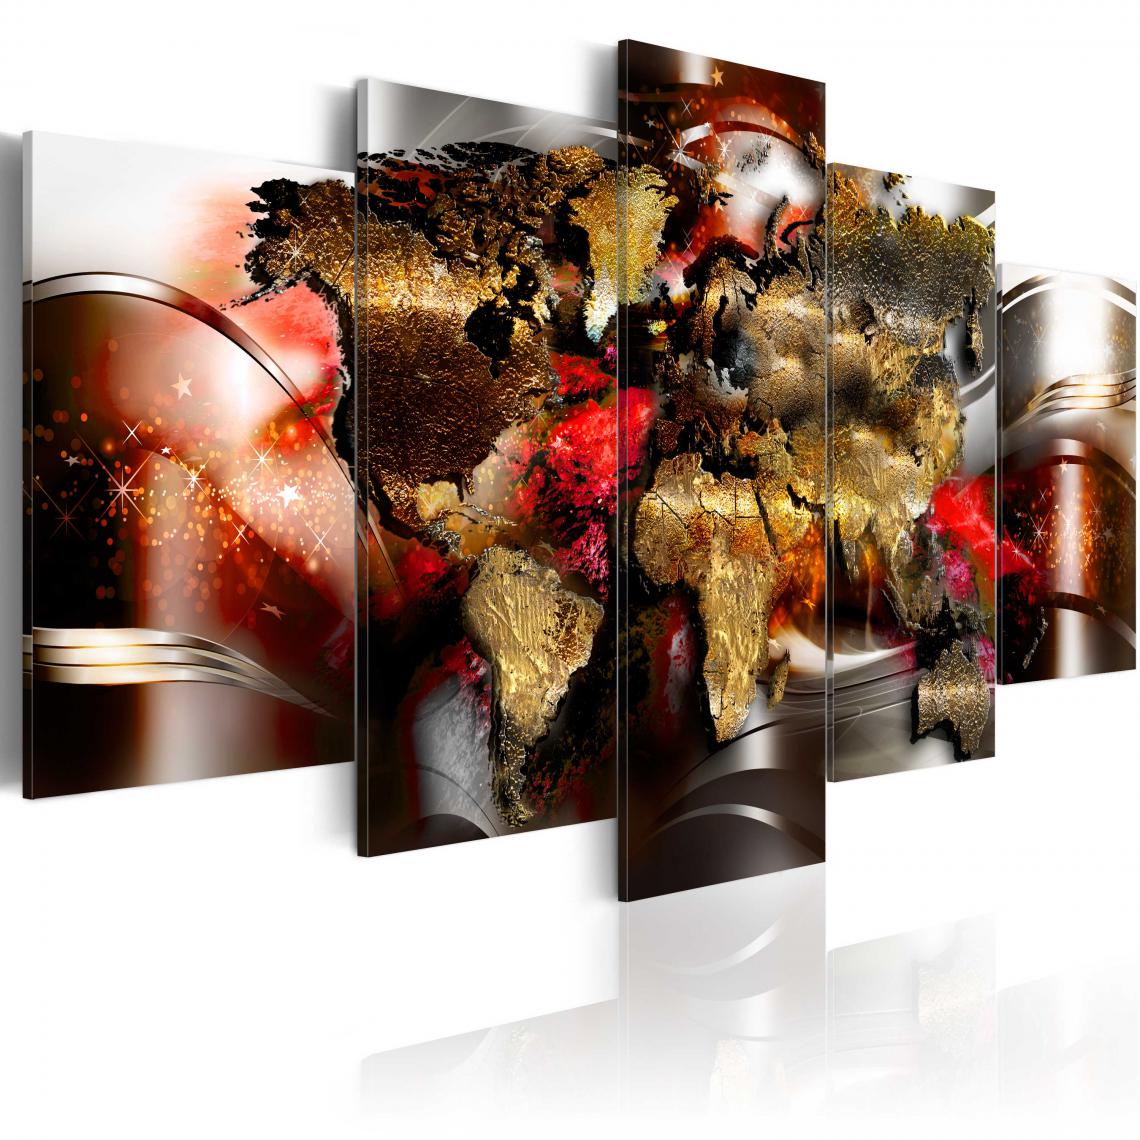 Decoshop26 - Tableau sur toile en 5 panneaux décoration murale image imprimée cadre en bois à suspendre Ruban Rubis 200x100 cm 11_0009901 - Tableaux, peintures